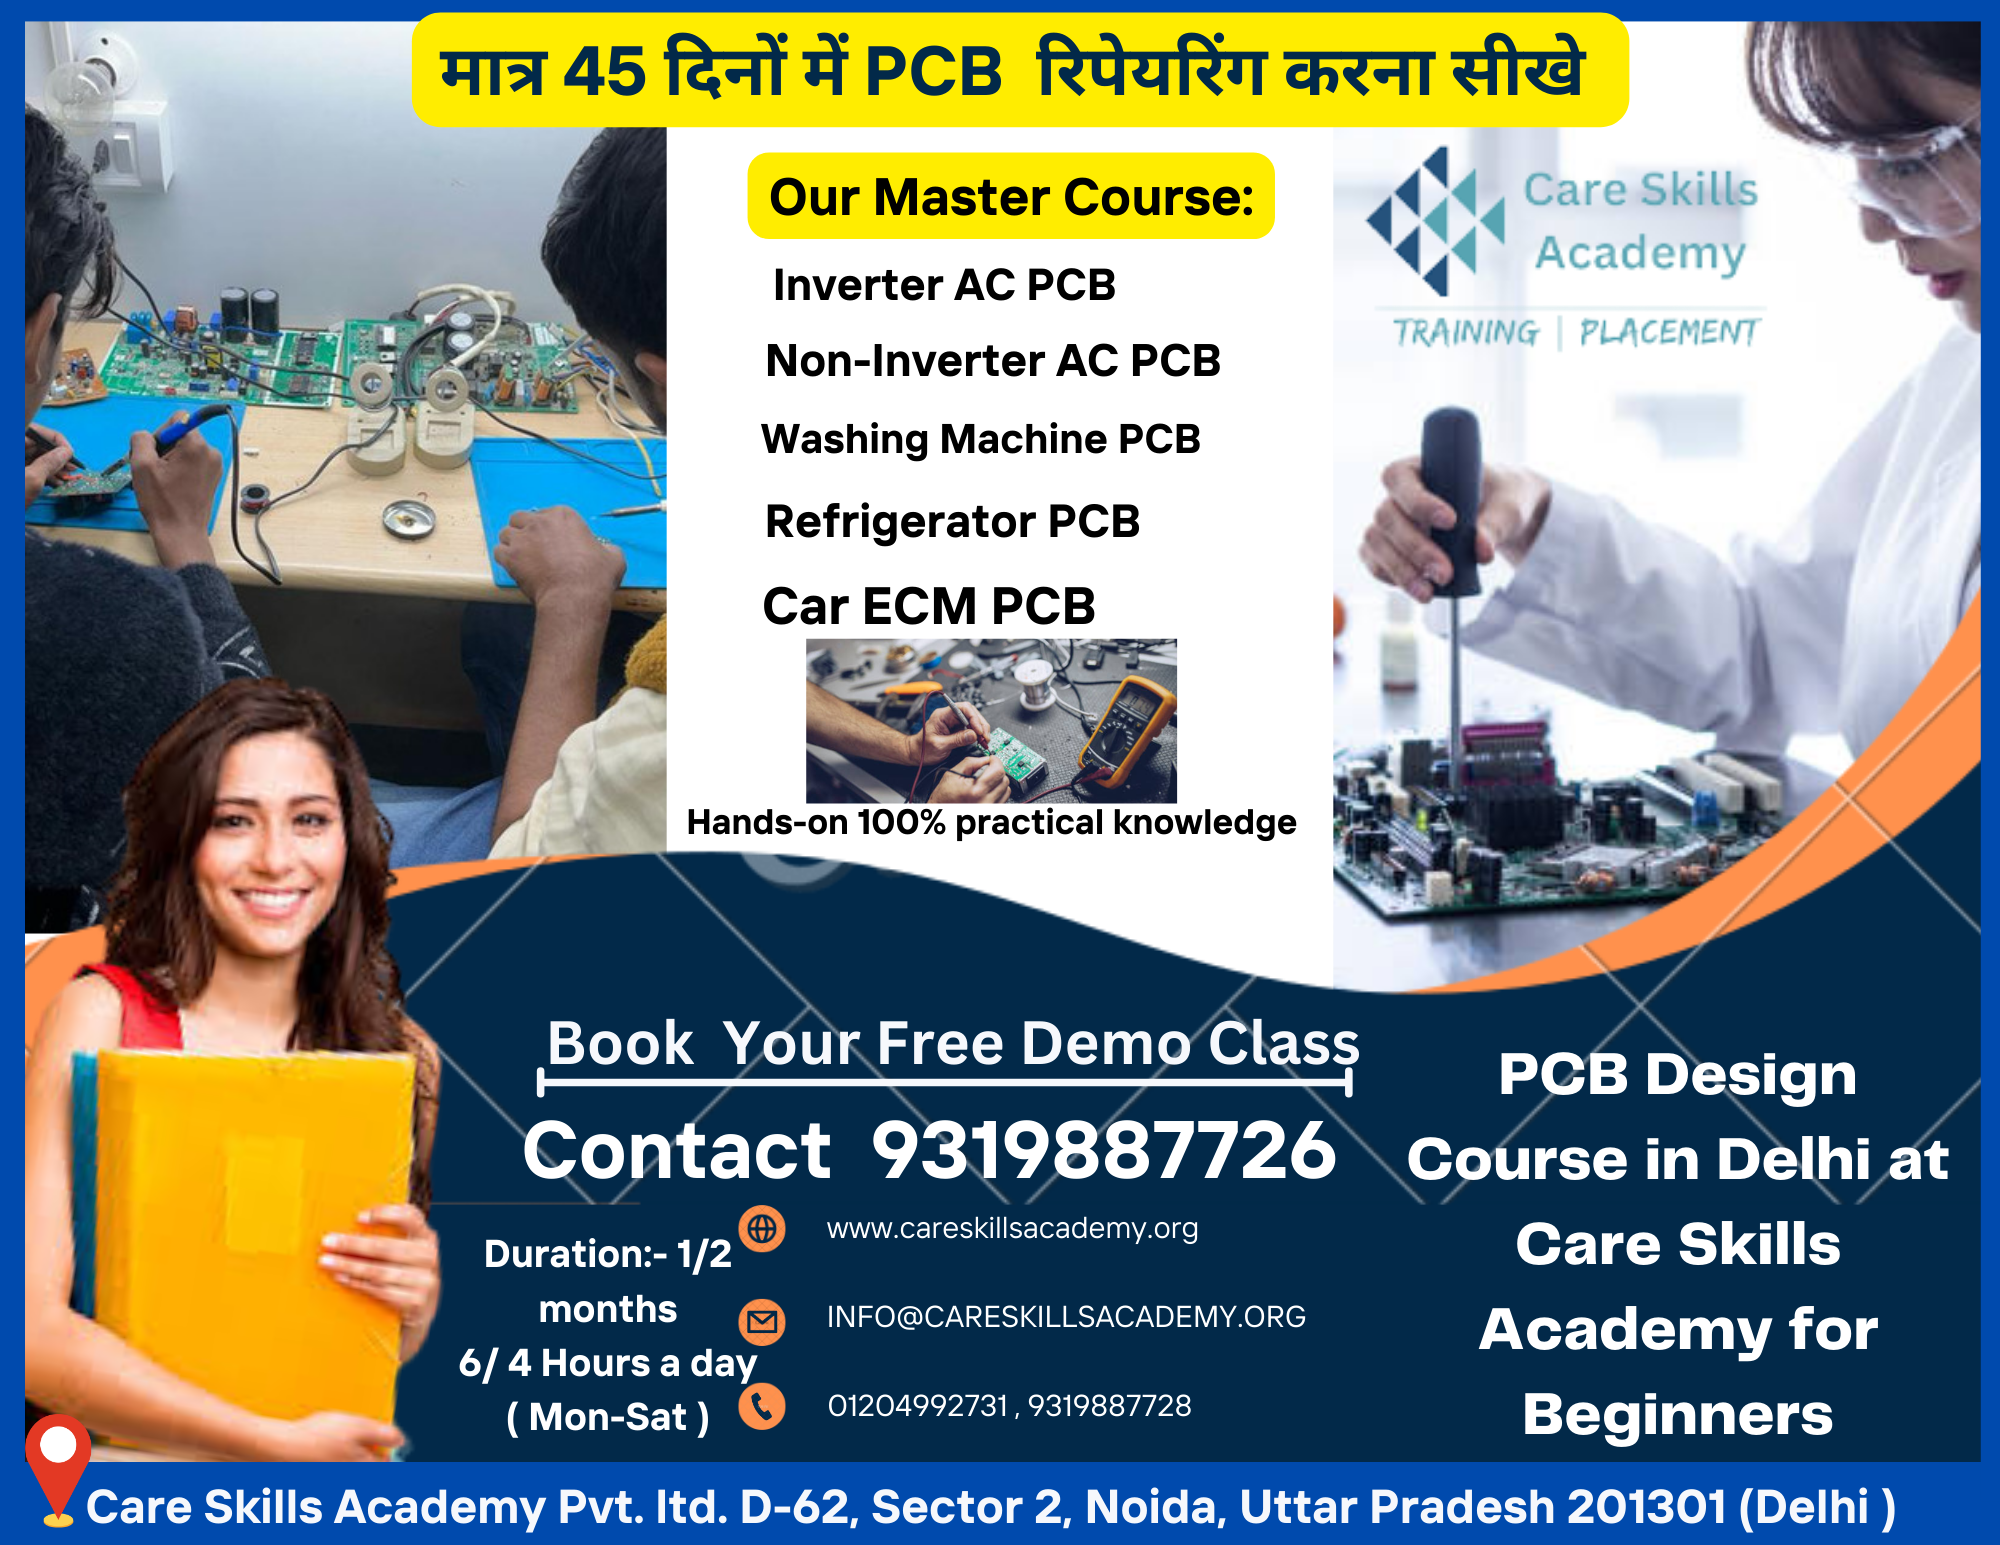 PCB Design Course in Delhi at Care Skills Academy